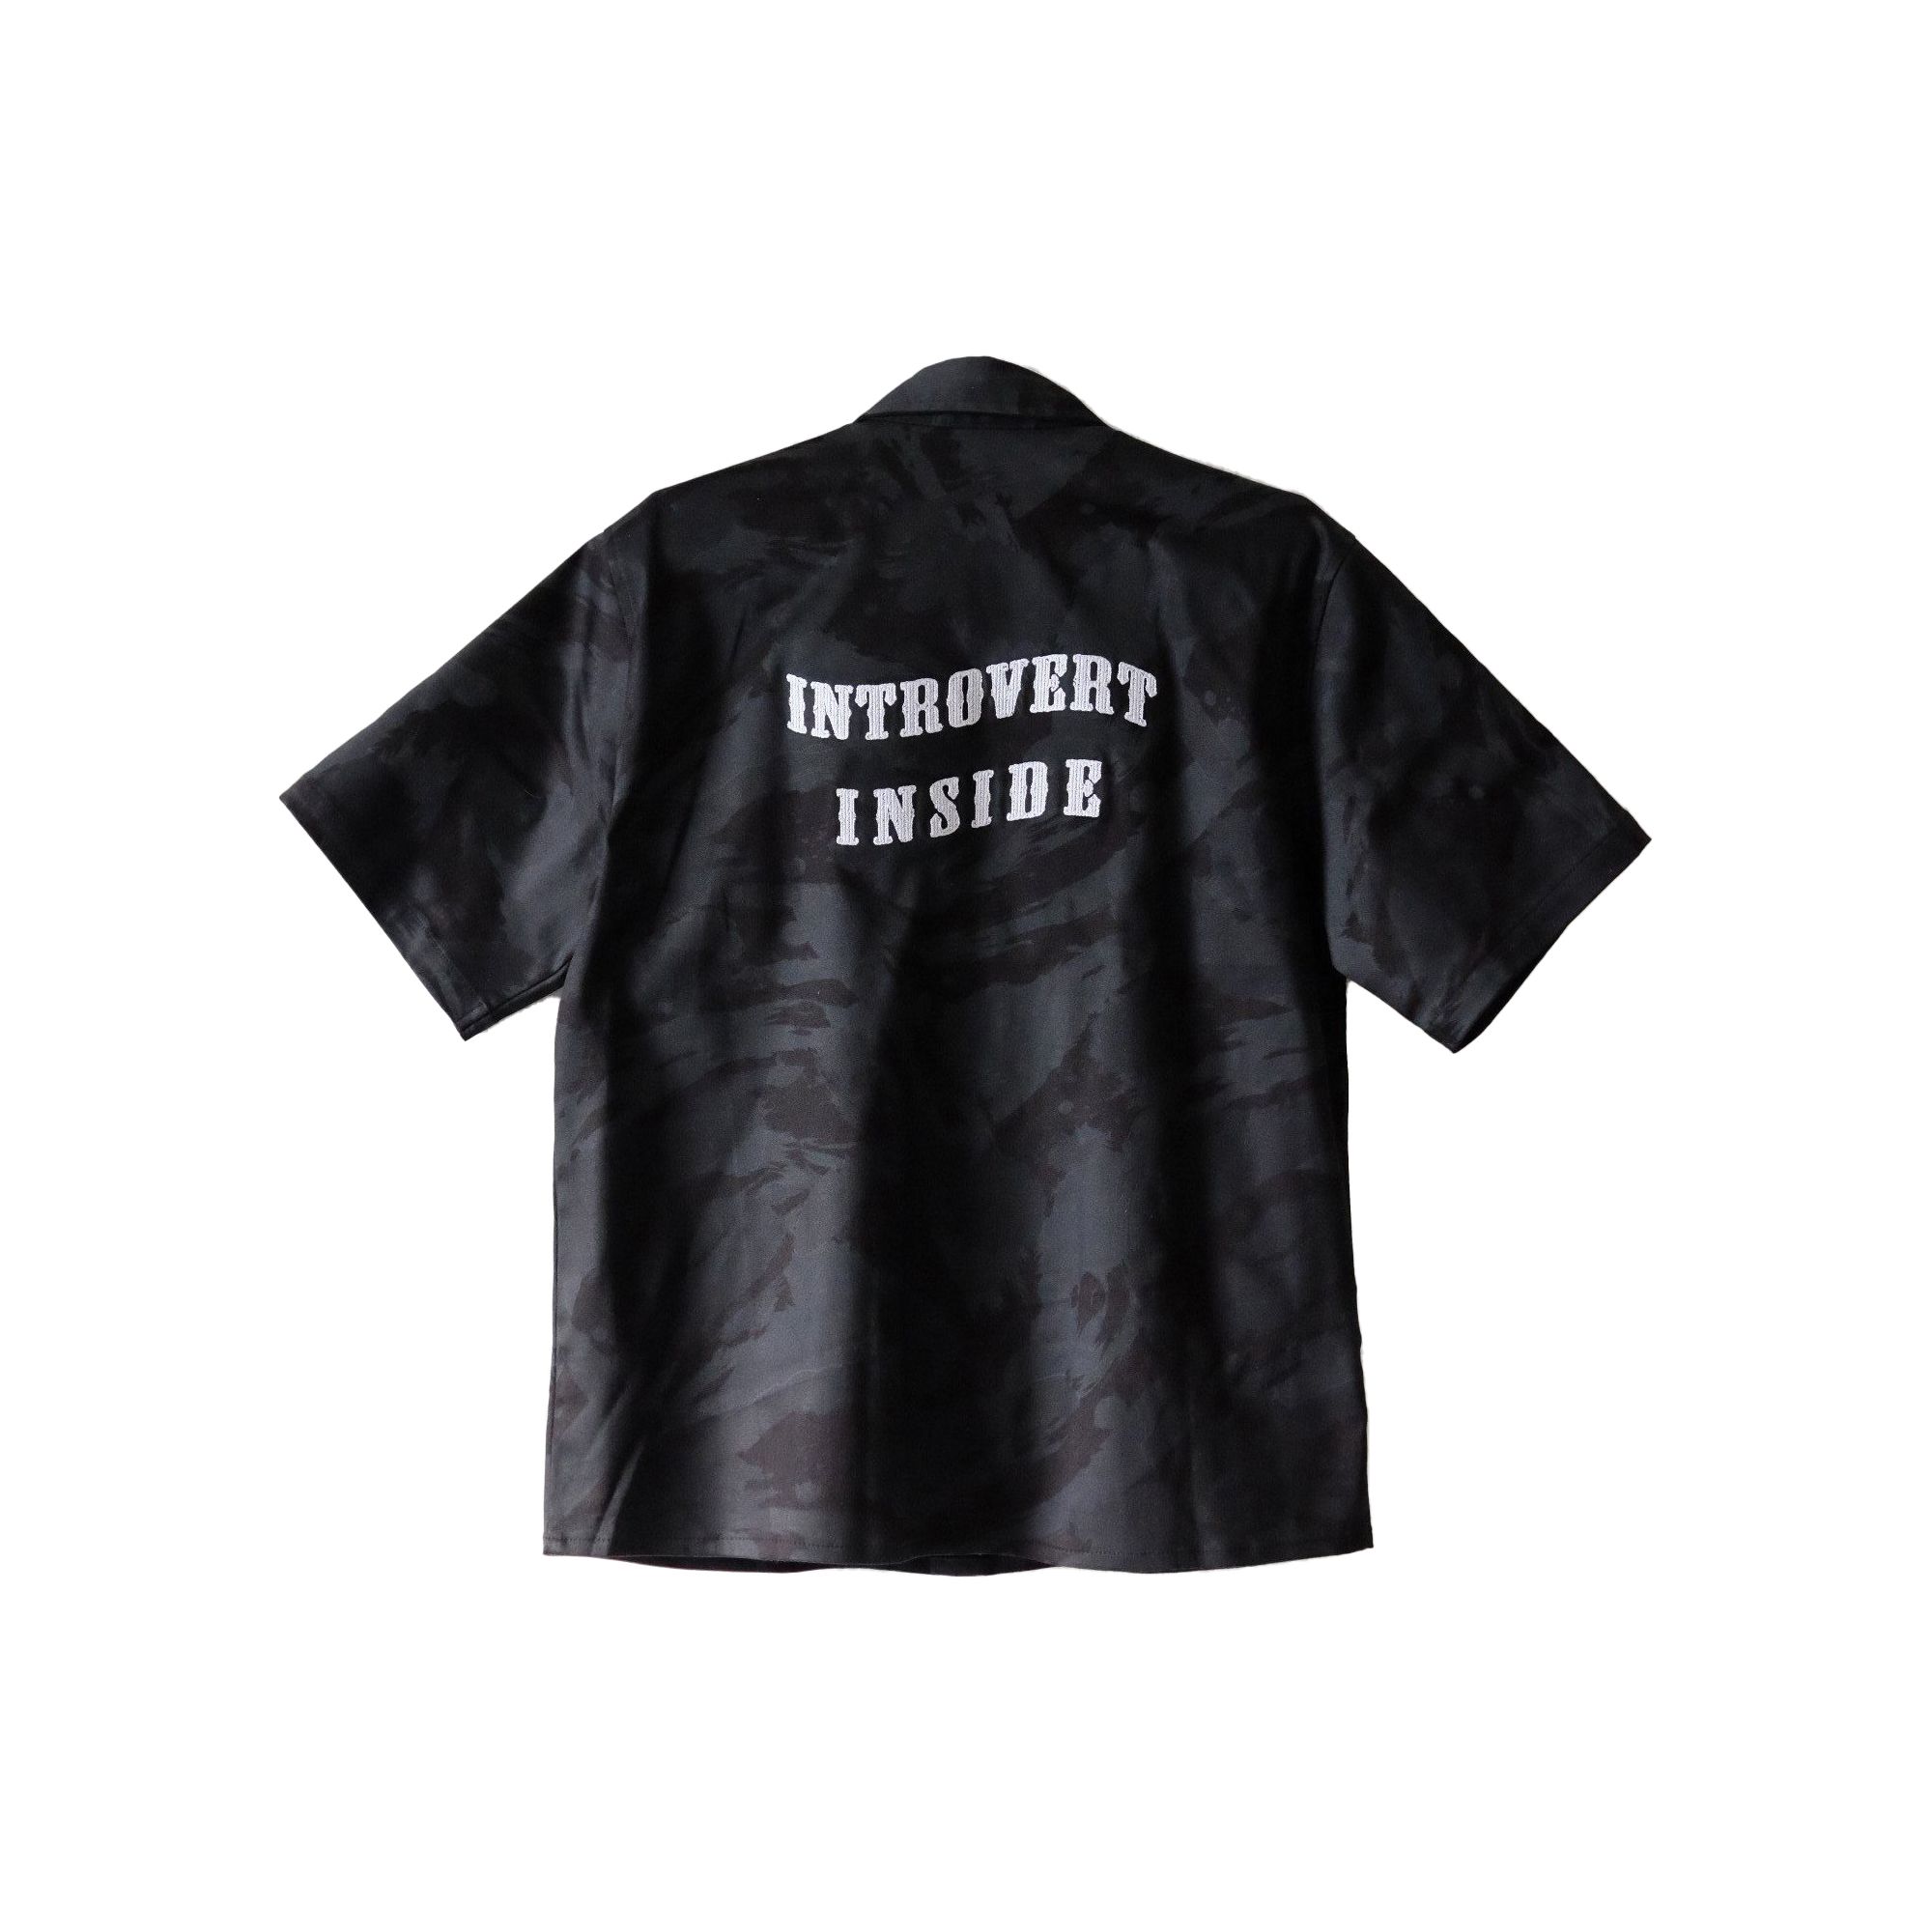  Introvert Inside Shirt 